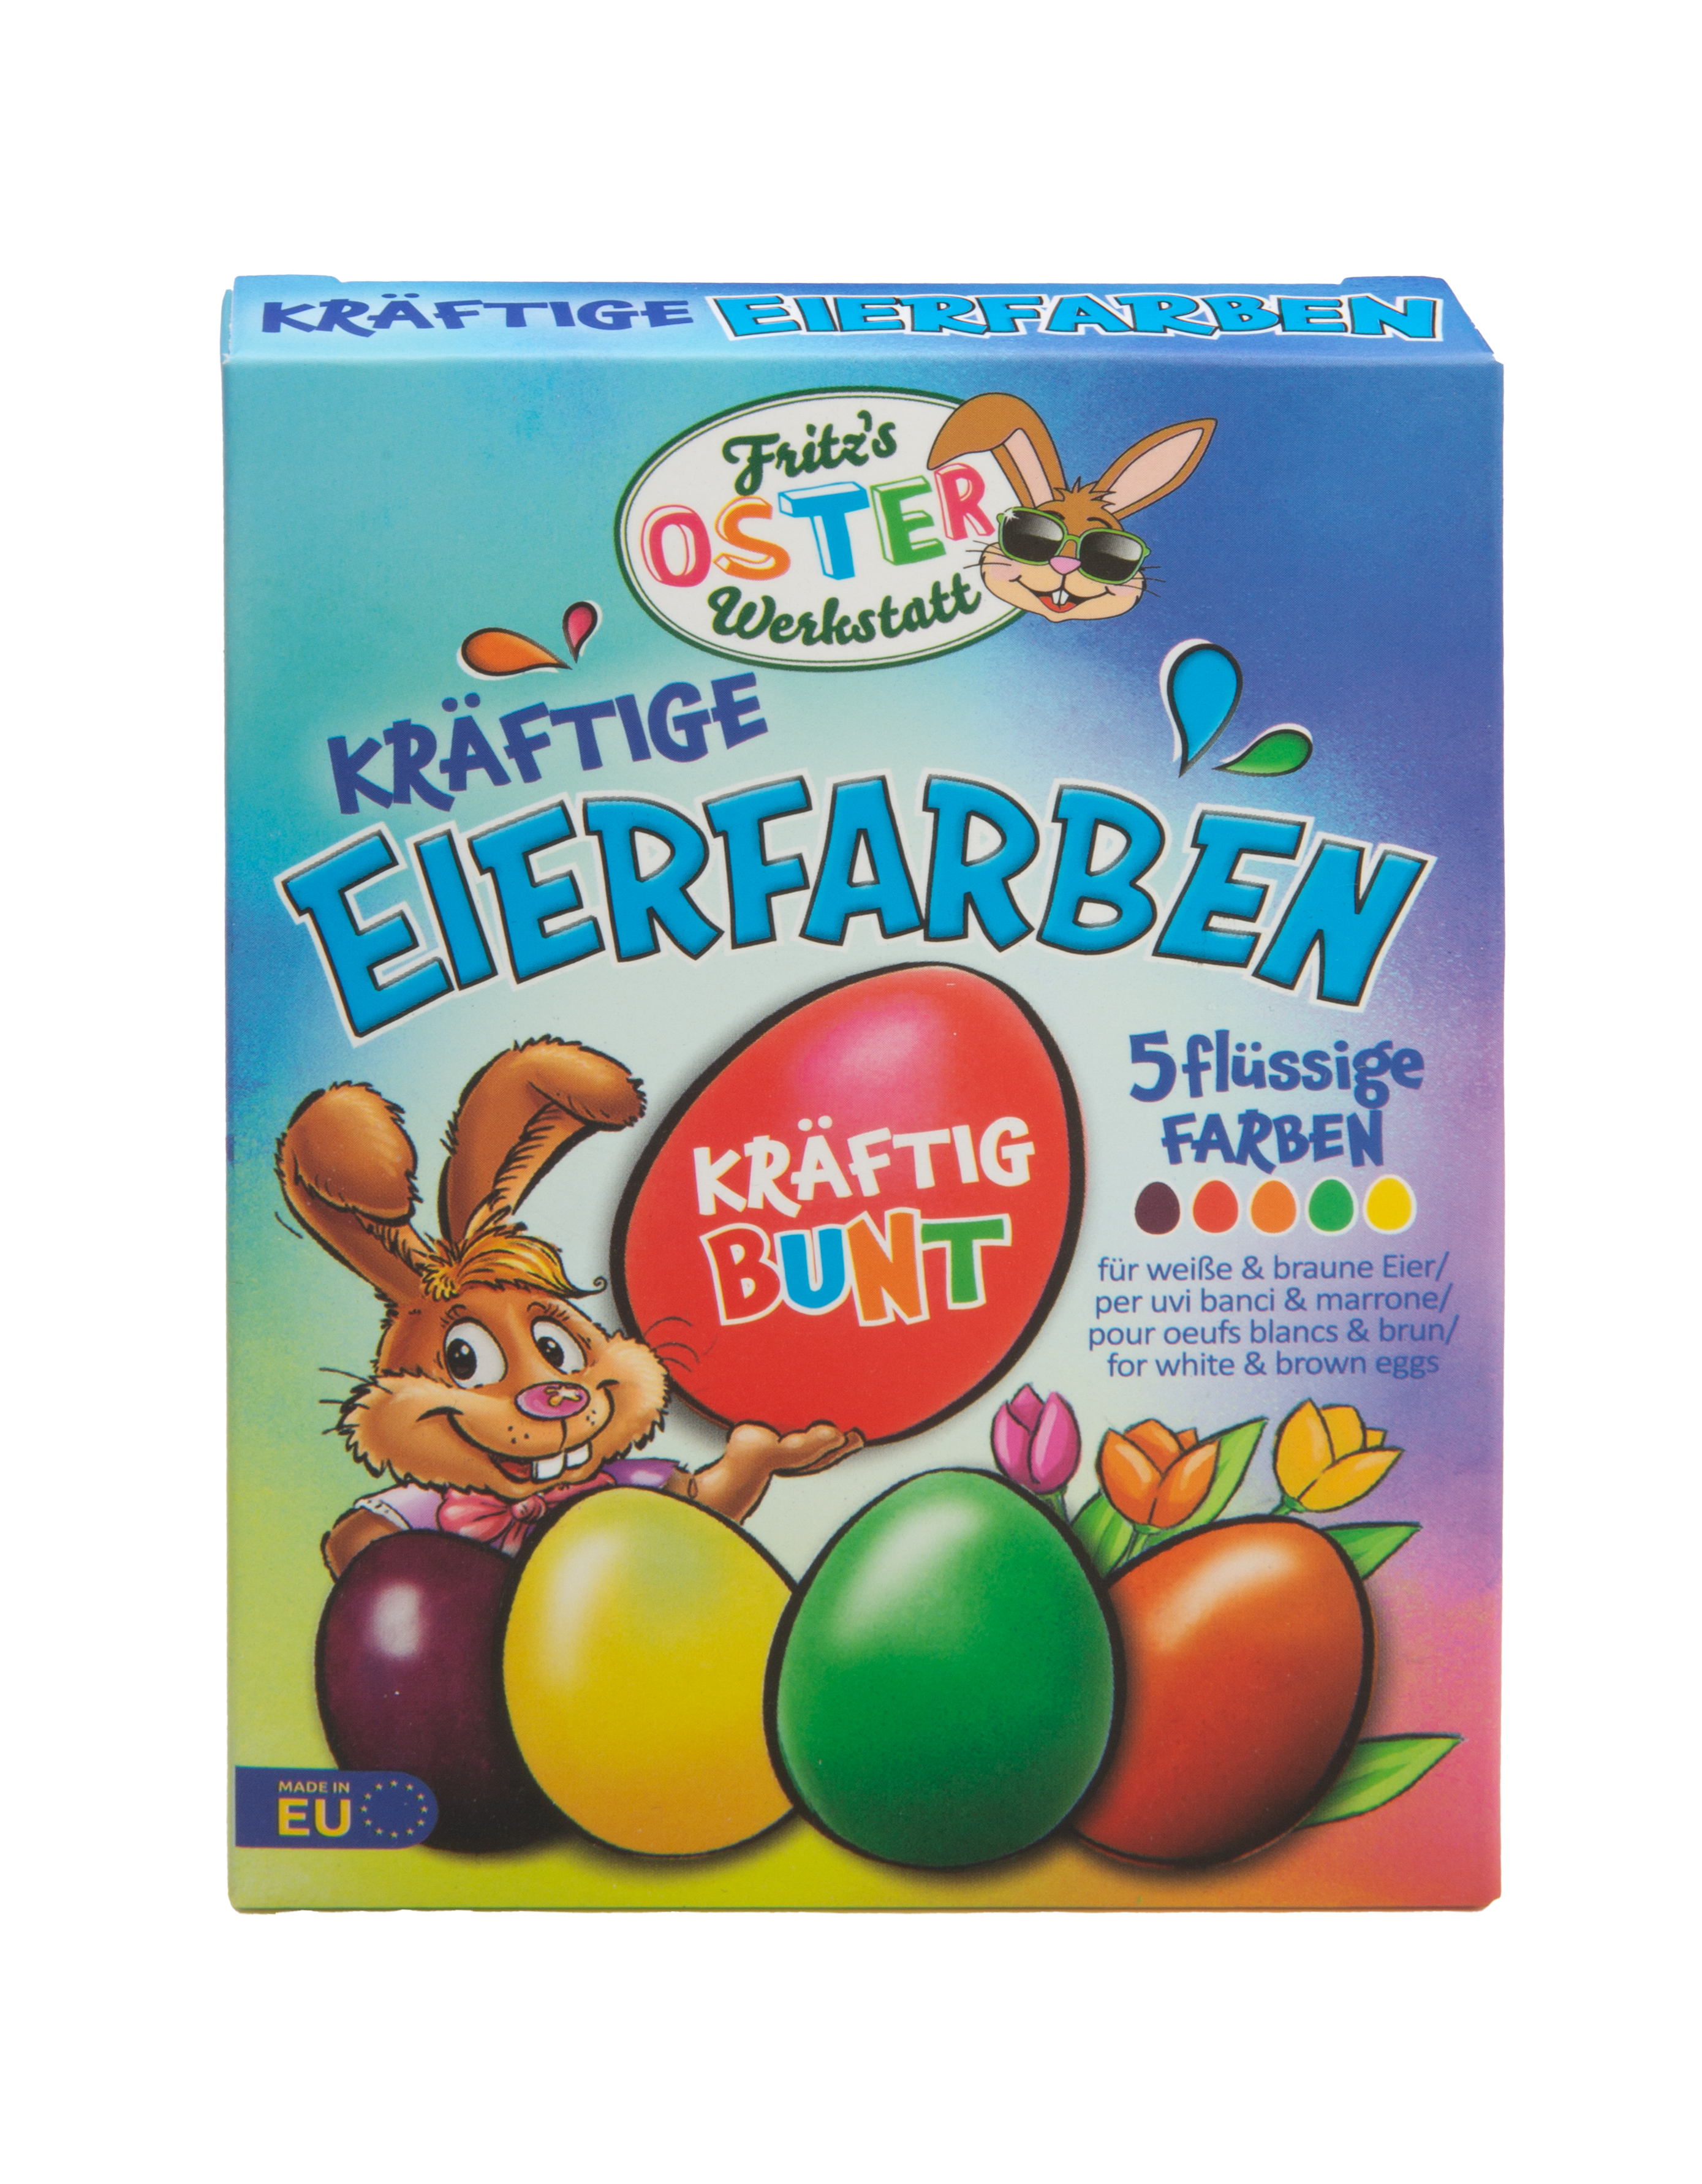 Kräftige Eierfarben Set 5 flüssige Farben Fritz´s Osterwerkstatt